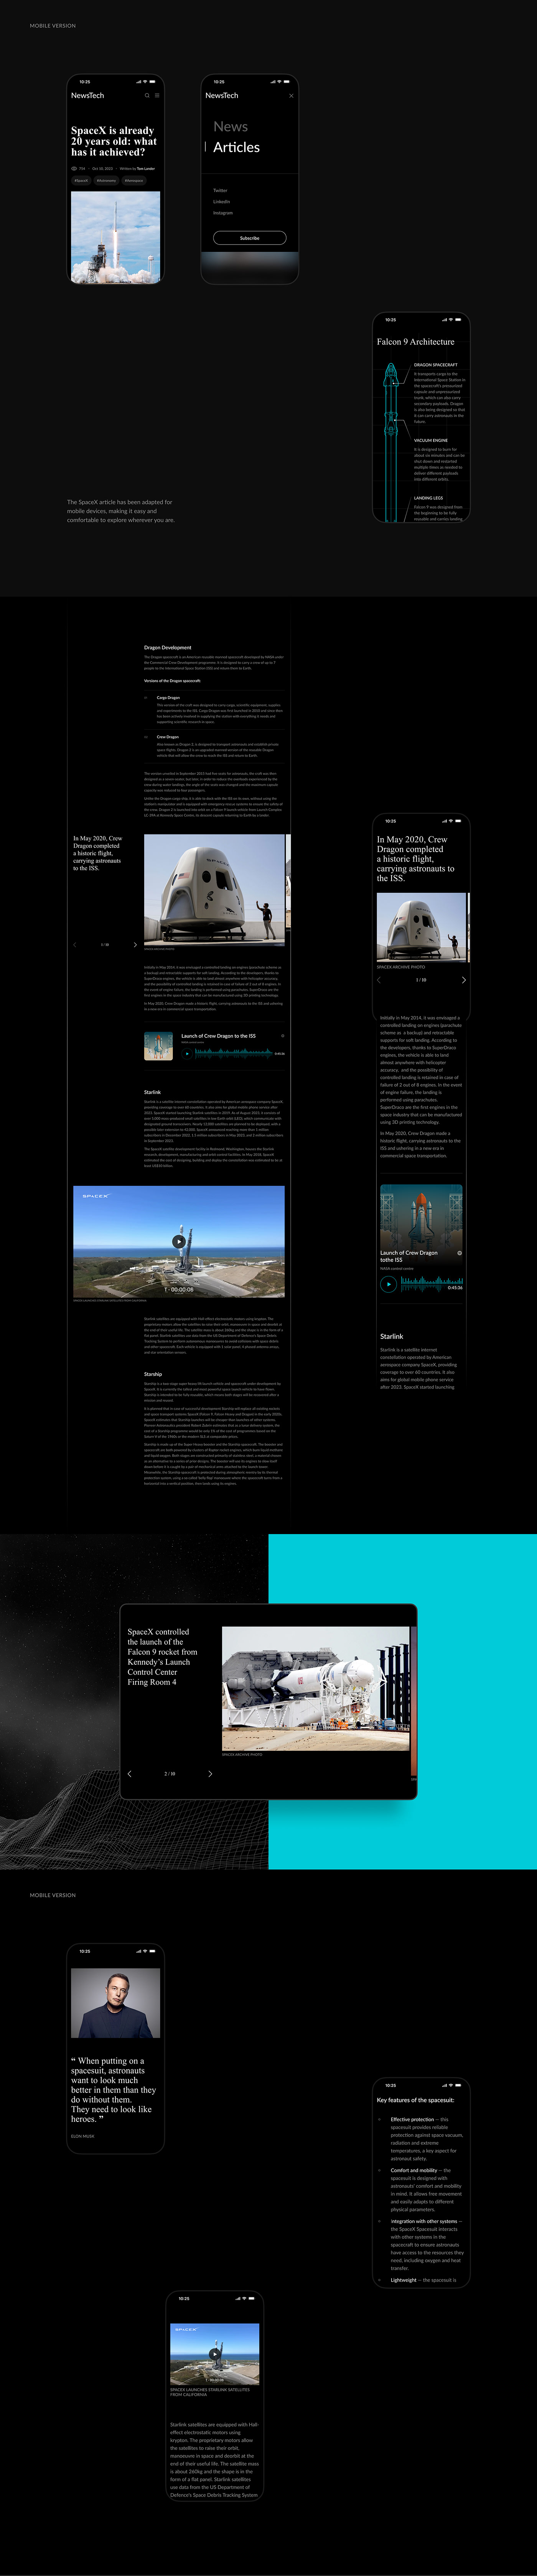 UI/UX ui design UI design Space  spacex mobile user interface Web Design  ux/ui